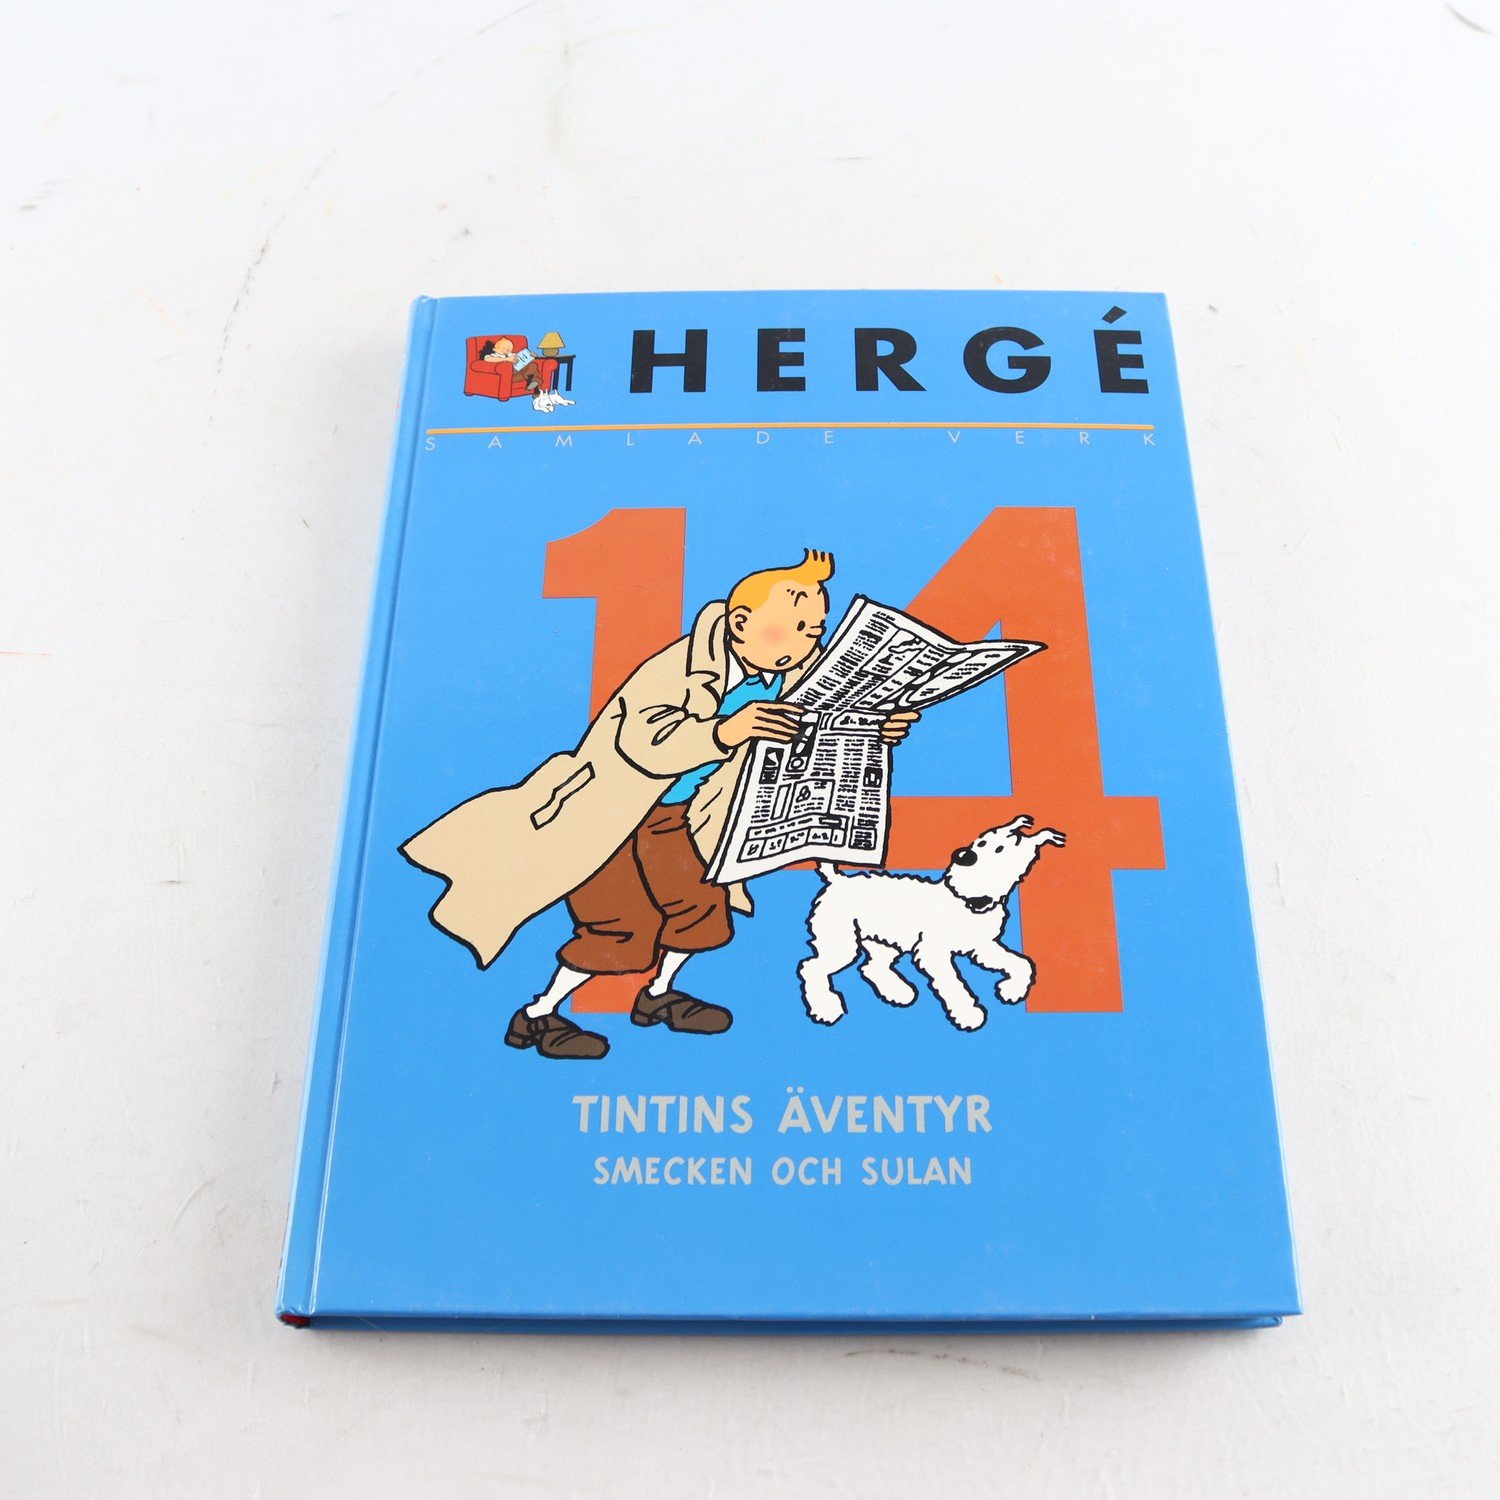 Hergé, Samlade verk, Vol. 14, Tintins äventyr, Smecken och Sulan